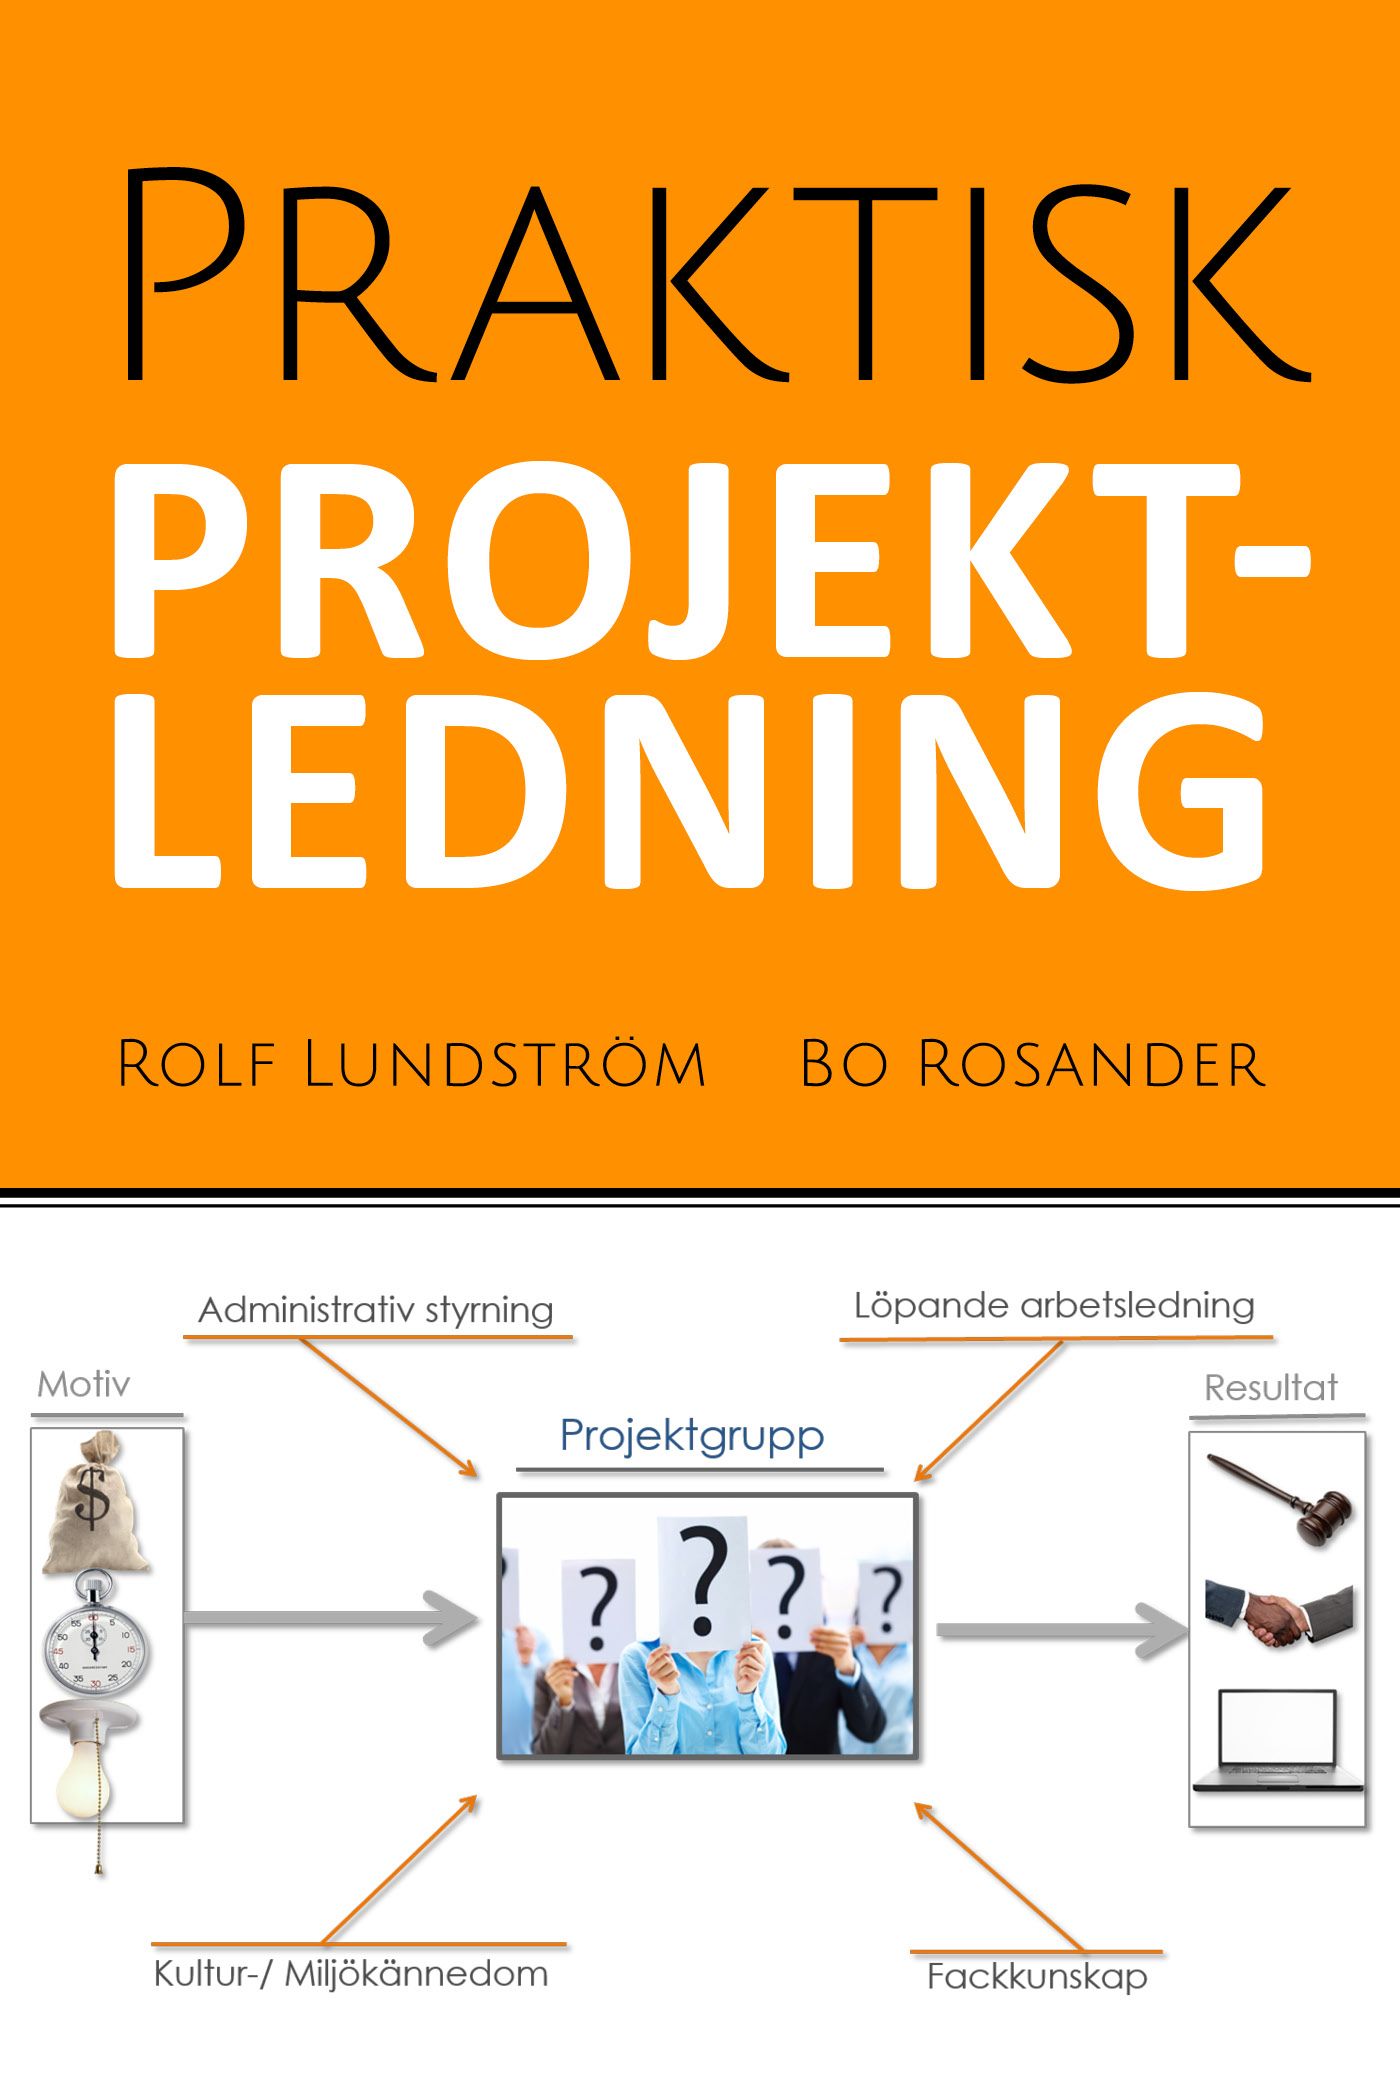 Praktisk projektledning, eBook by Rolf Lundström, Bo Rosander